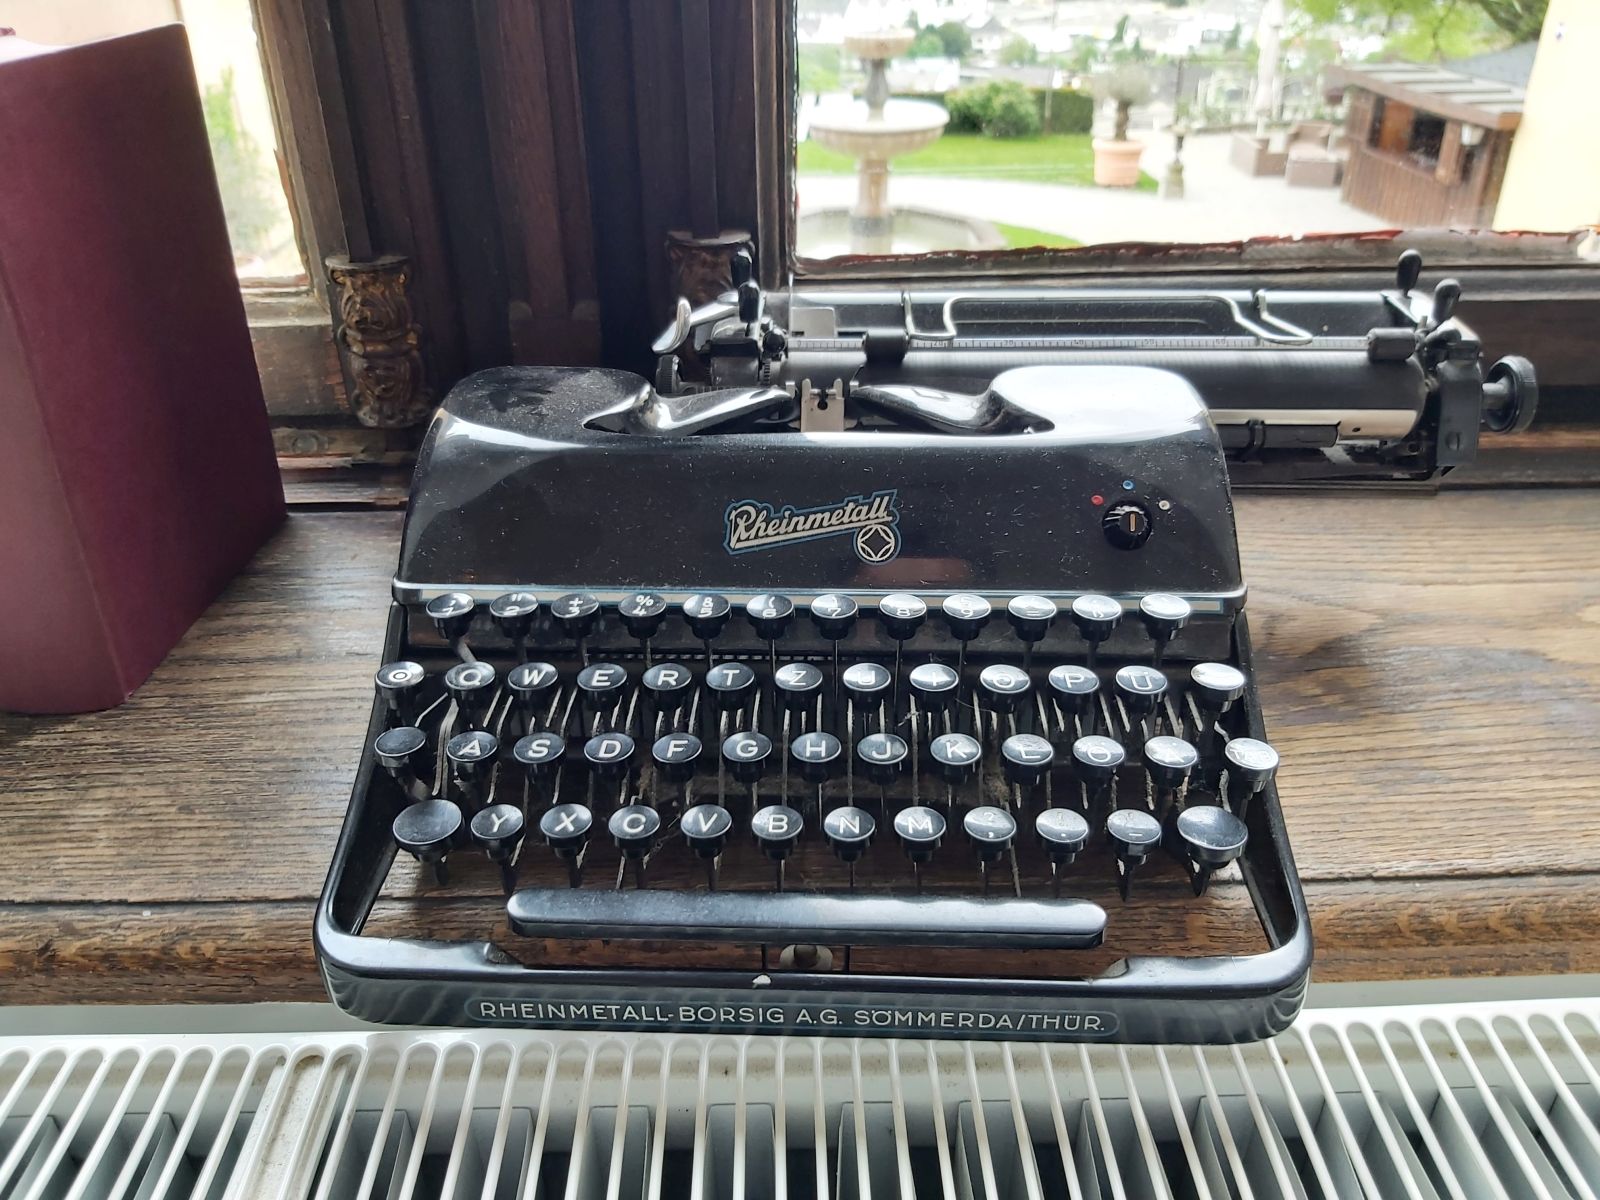 Ein Schreibmaschinenschätzchen der Rheinmetall-Borsig AG